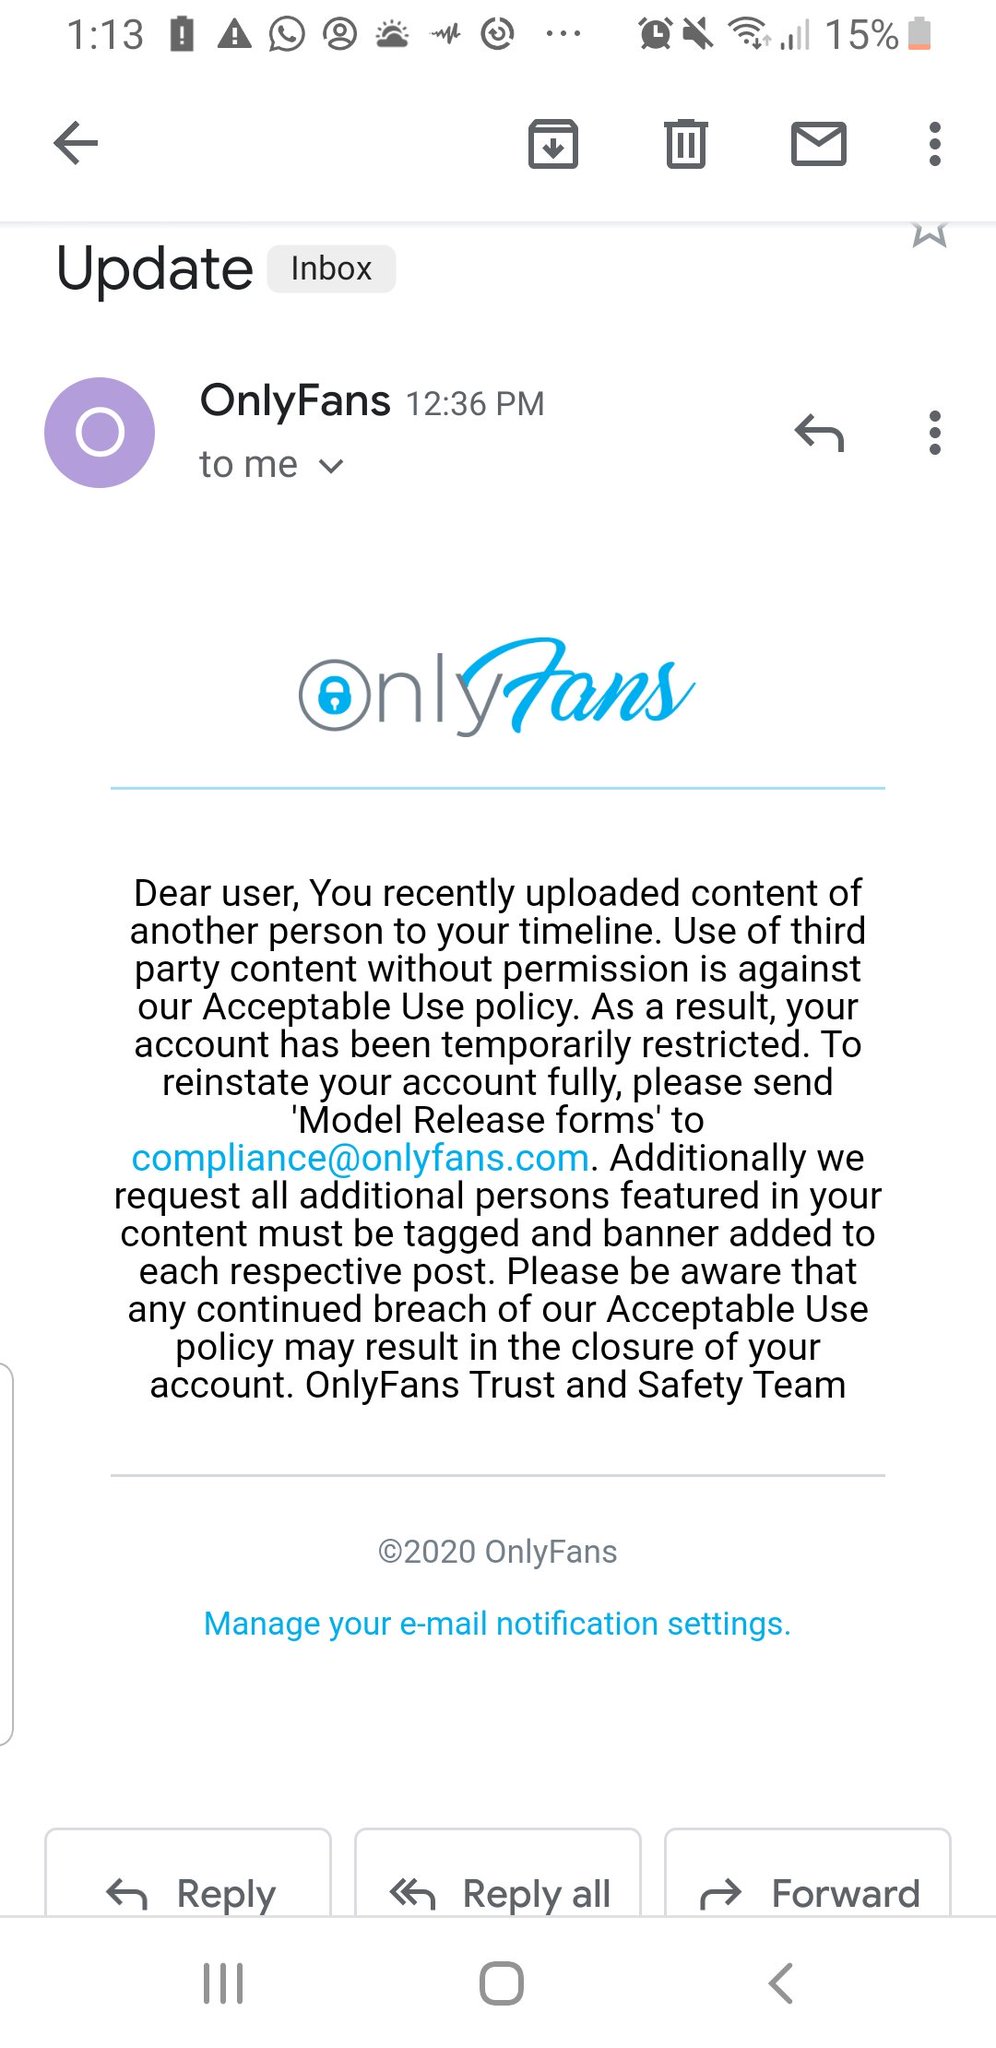 Onlyfans model release form